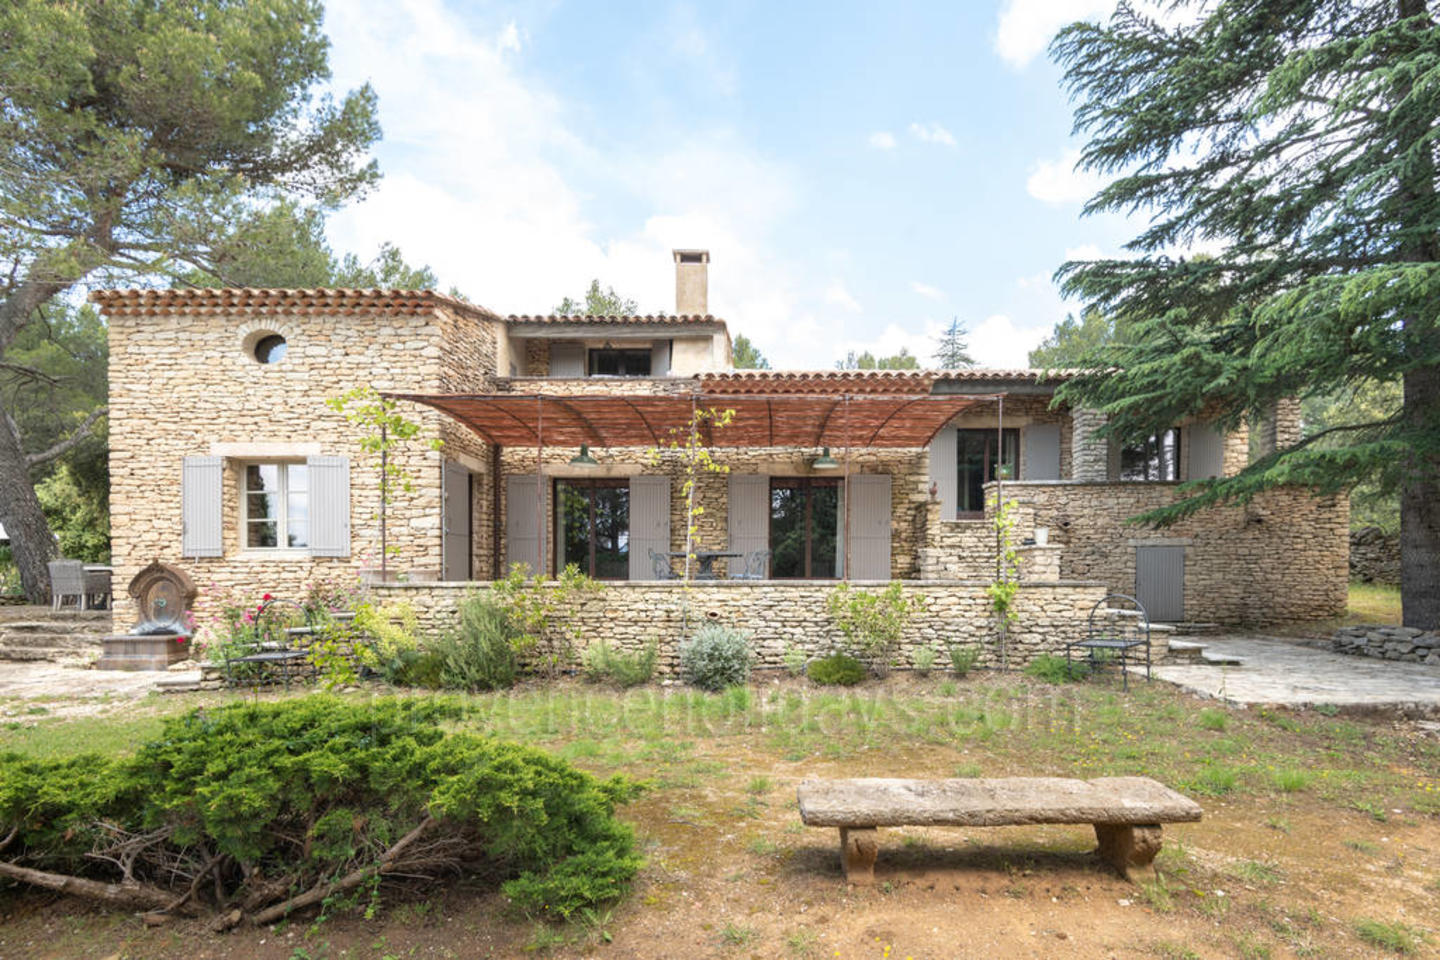 Location de vacances de luxe avec piscine chauffée près de Gordes 1 - Mas Provence: Villa: Exterior